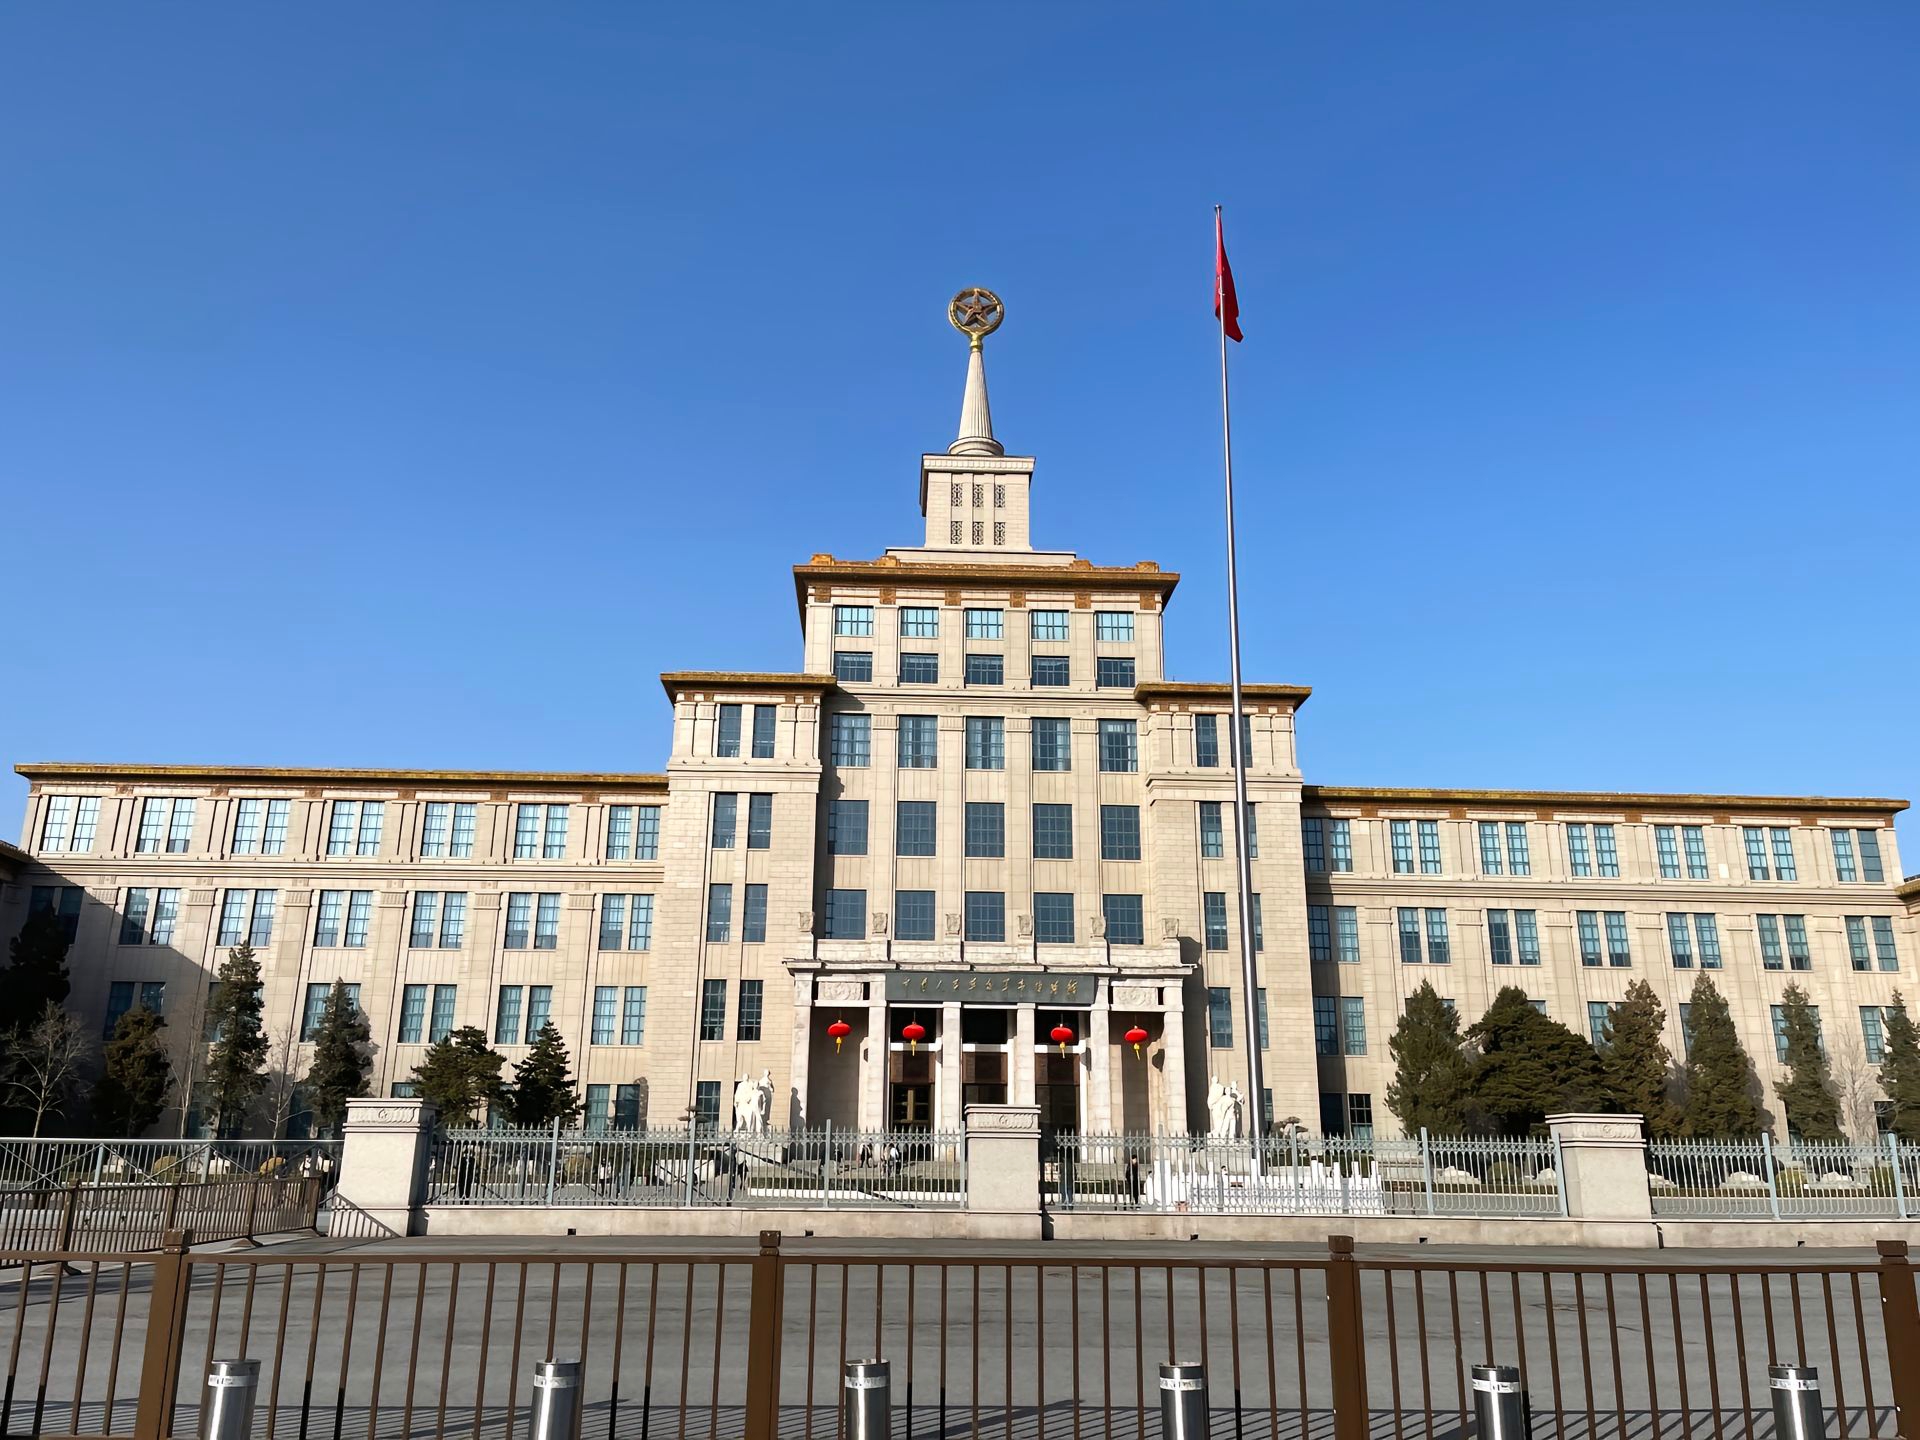 中国人民革命军事博物馆（含中国民兵武器装备陈列馆），位于北京市海淀区复兴路9号，坐落于北京天安门西面